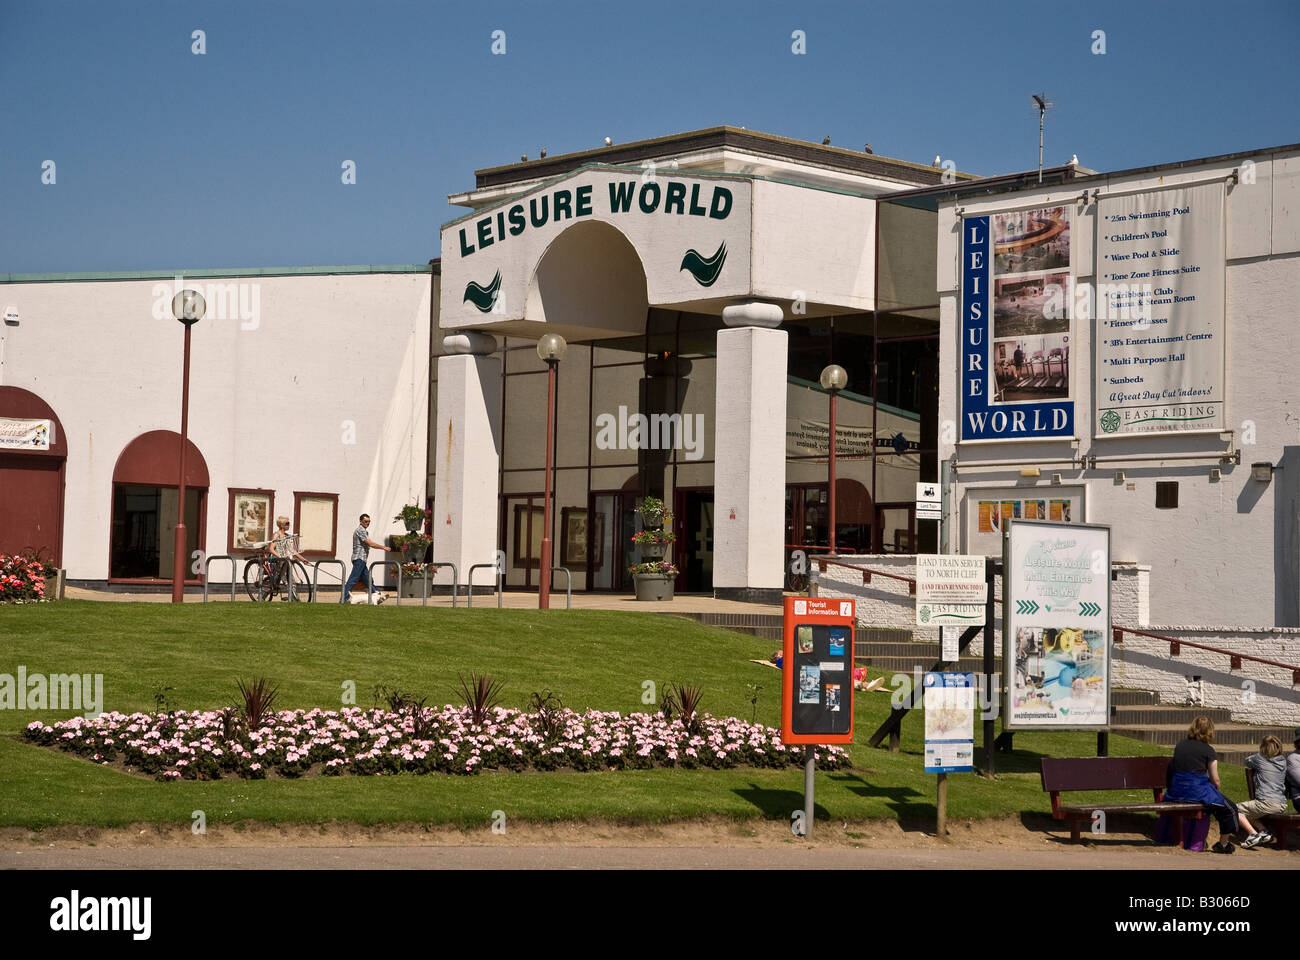 Leisure World at Bridlington Yorkshire UK Stock Photo